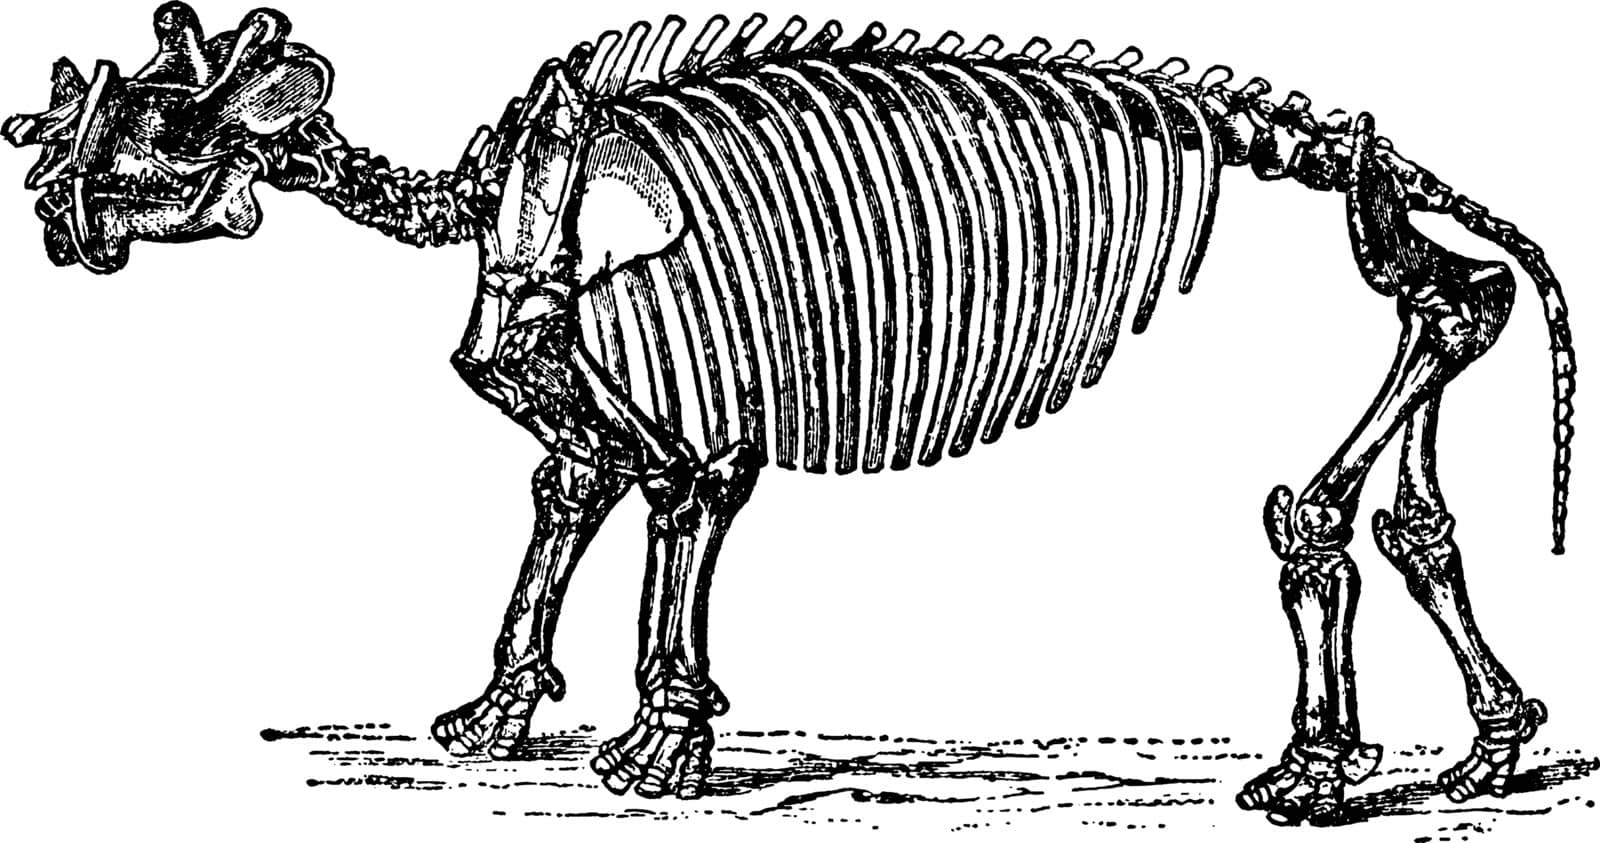 Dinoceras Skeleton, vintage illustration. by Morphart